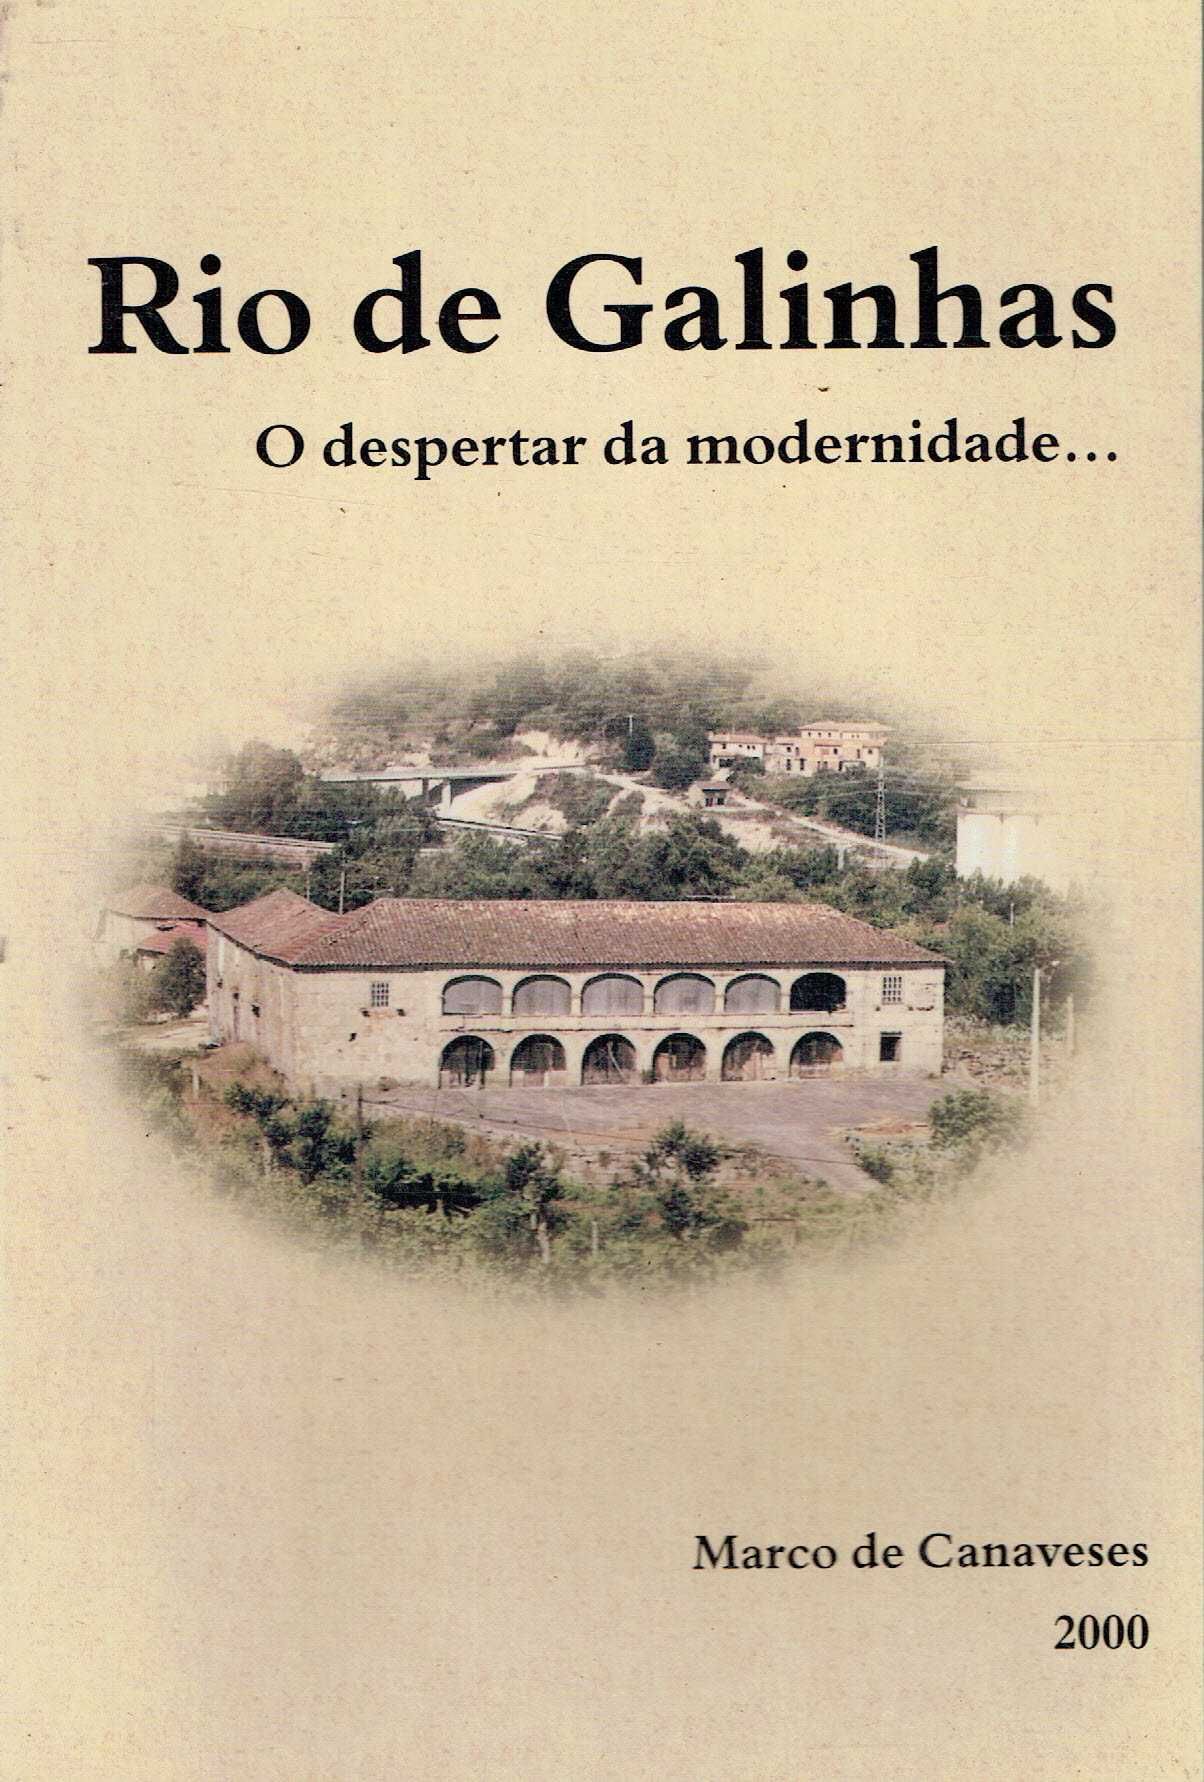 9504
	
Rio de Galinhas : o despertar da imortalidade 
Marco Canaveses